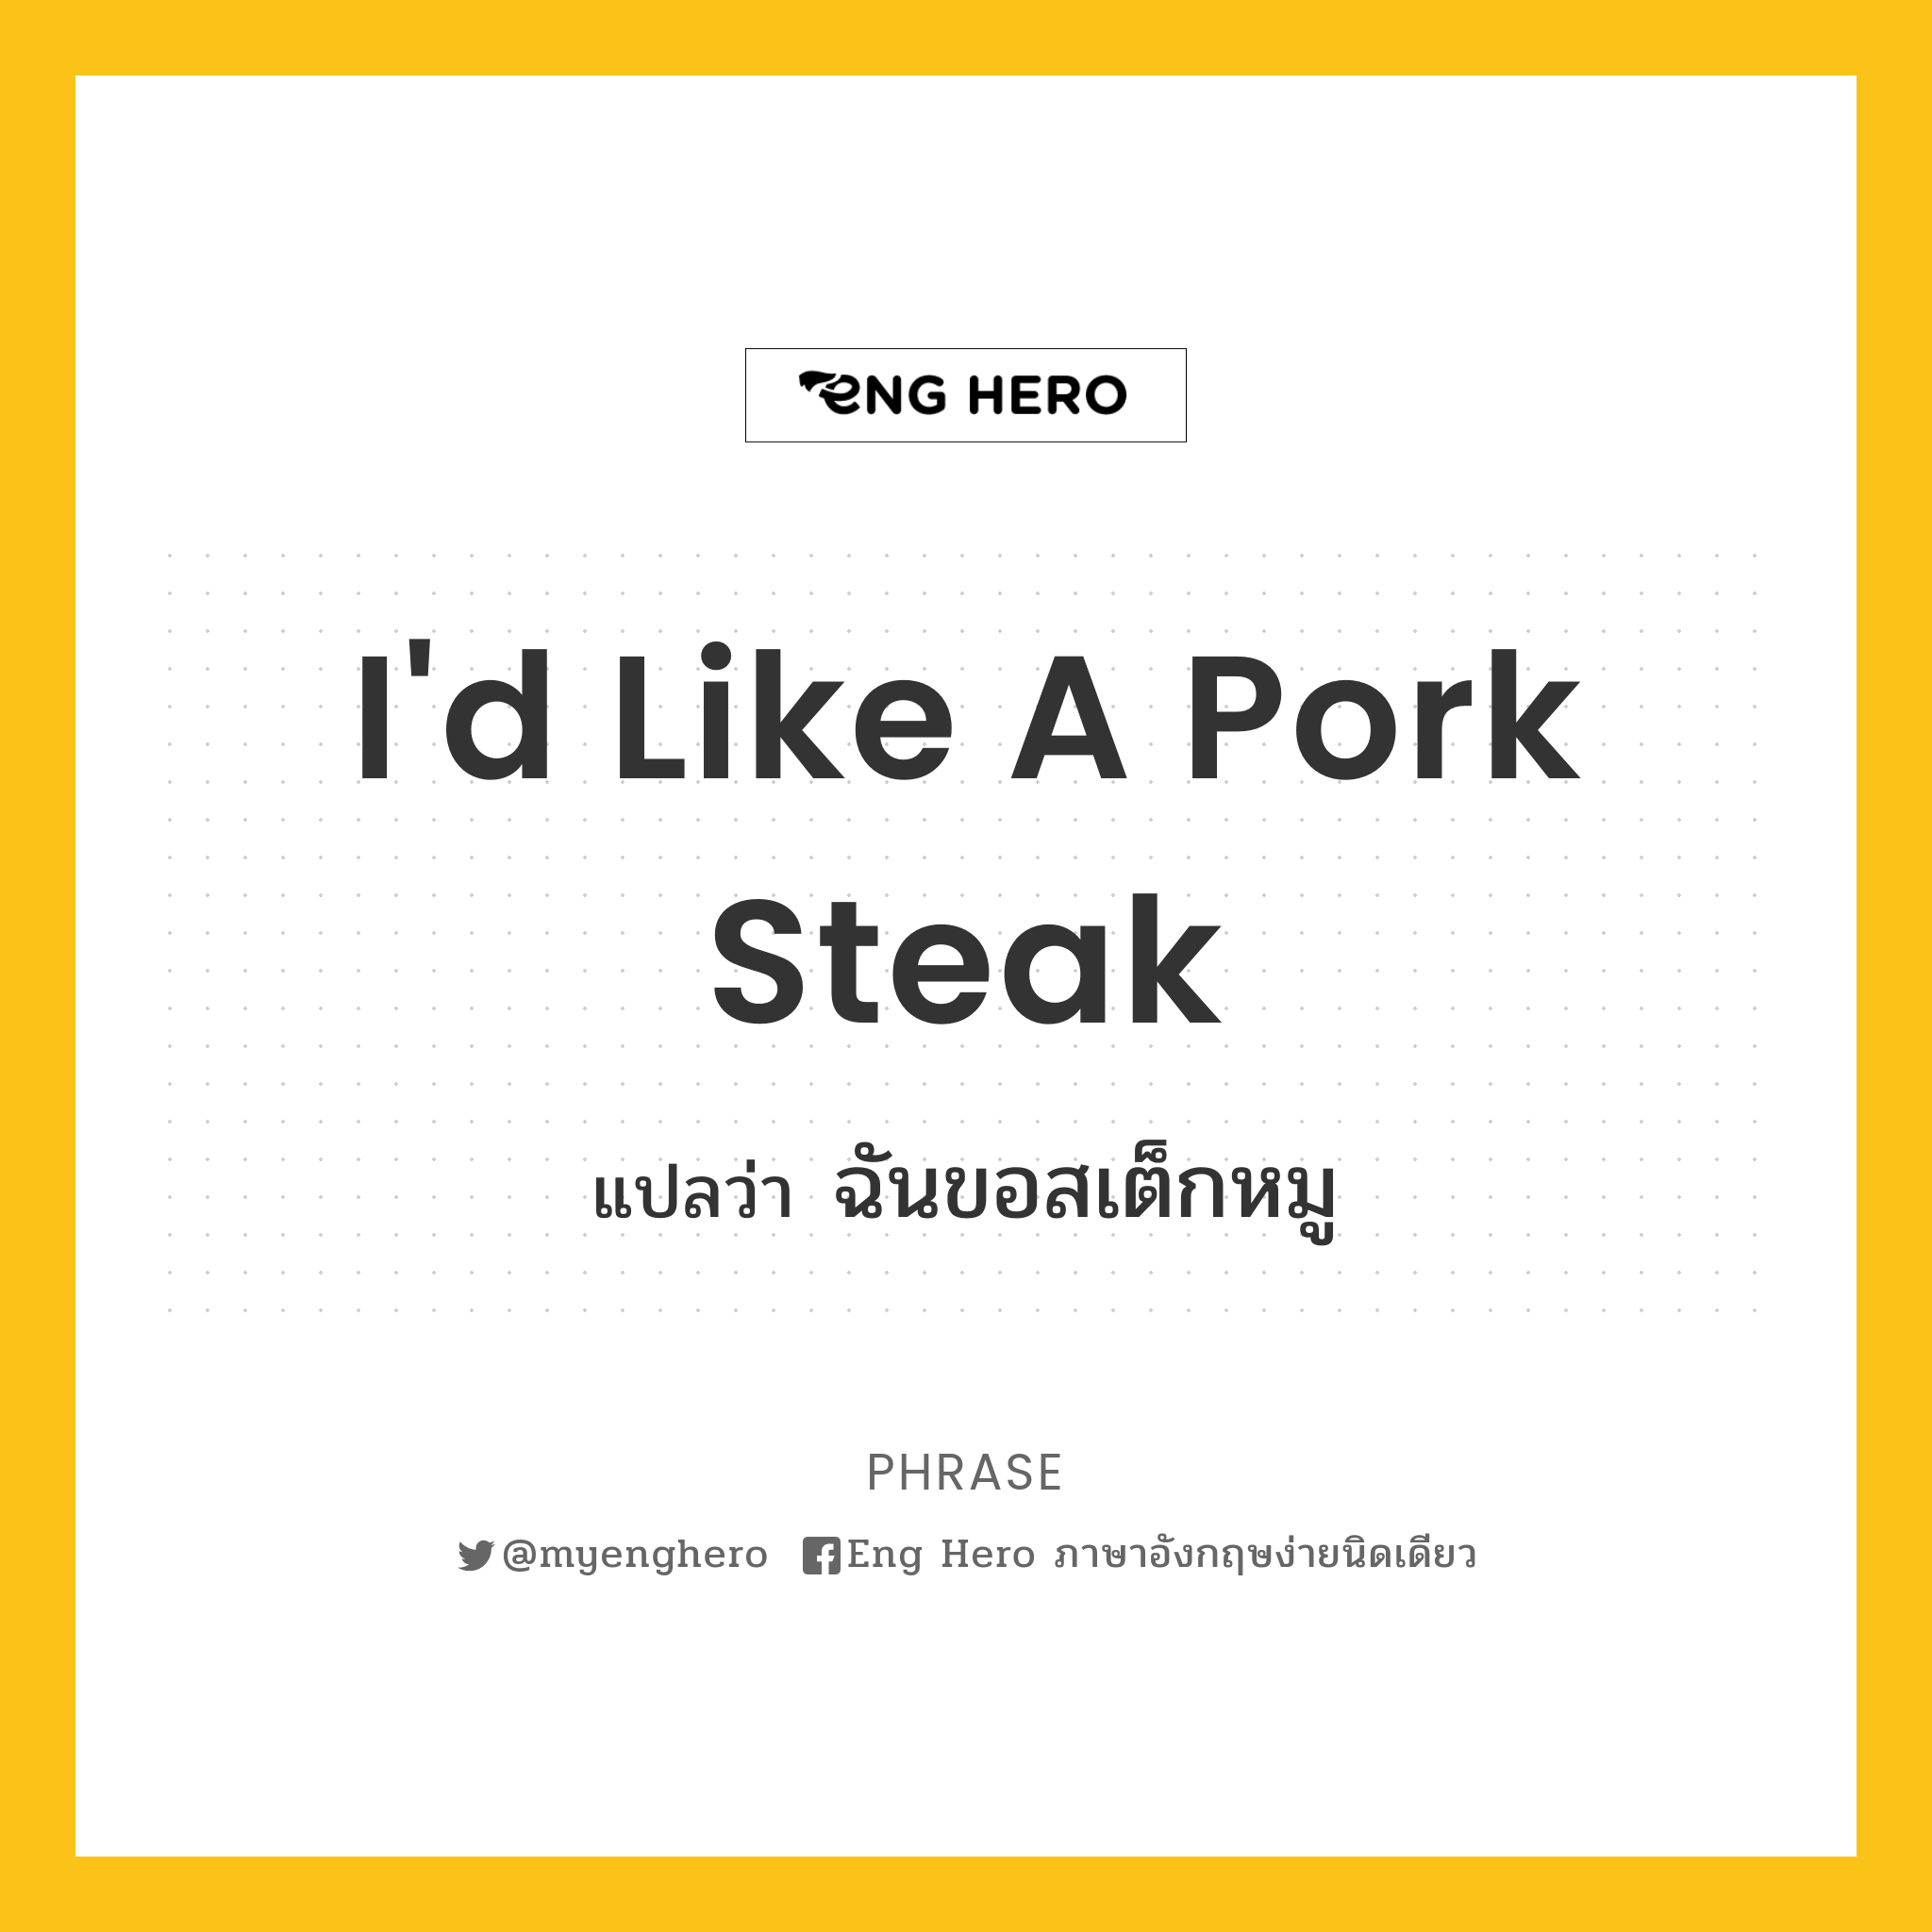 I'd like a pork steak